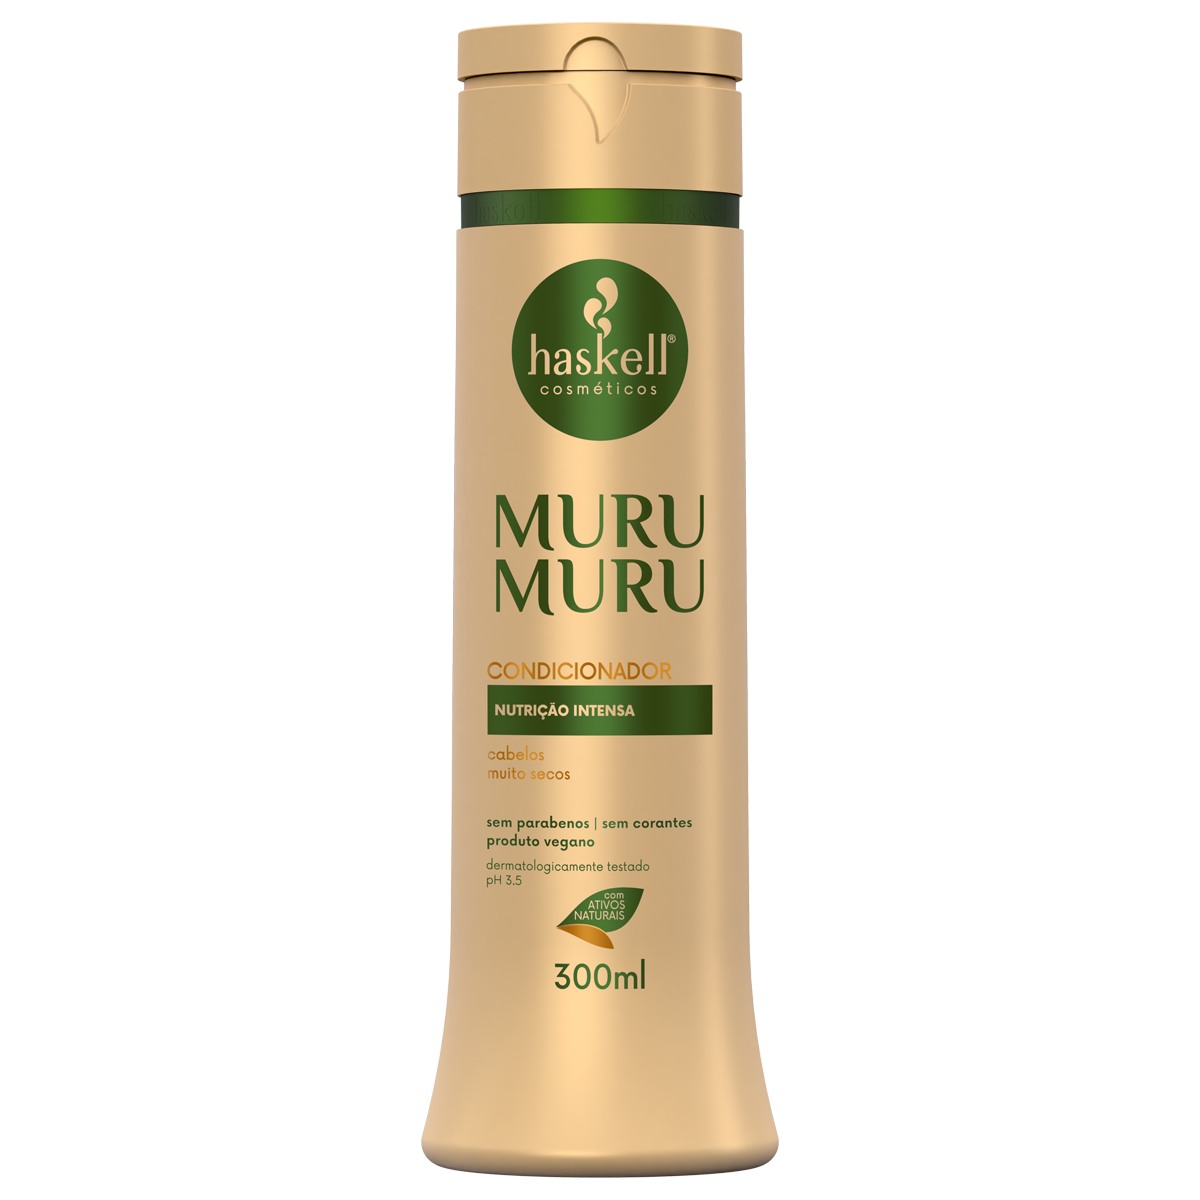 Conditioner Murumuru (300ml)